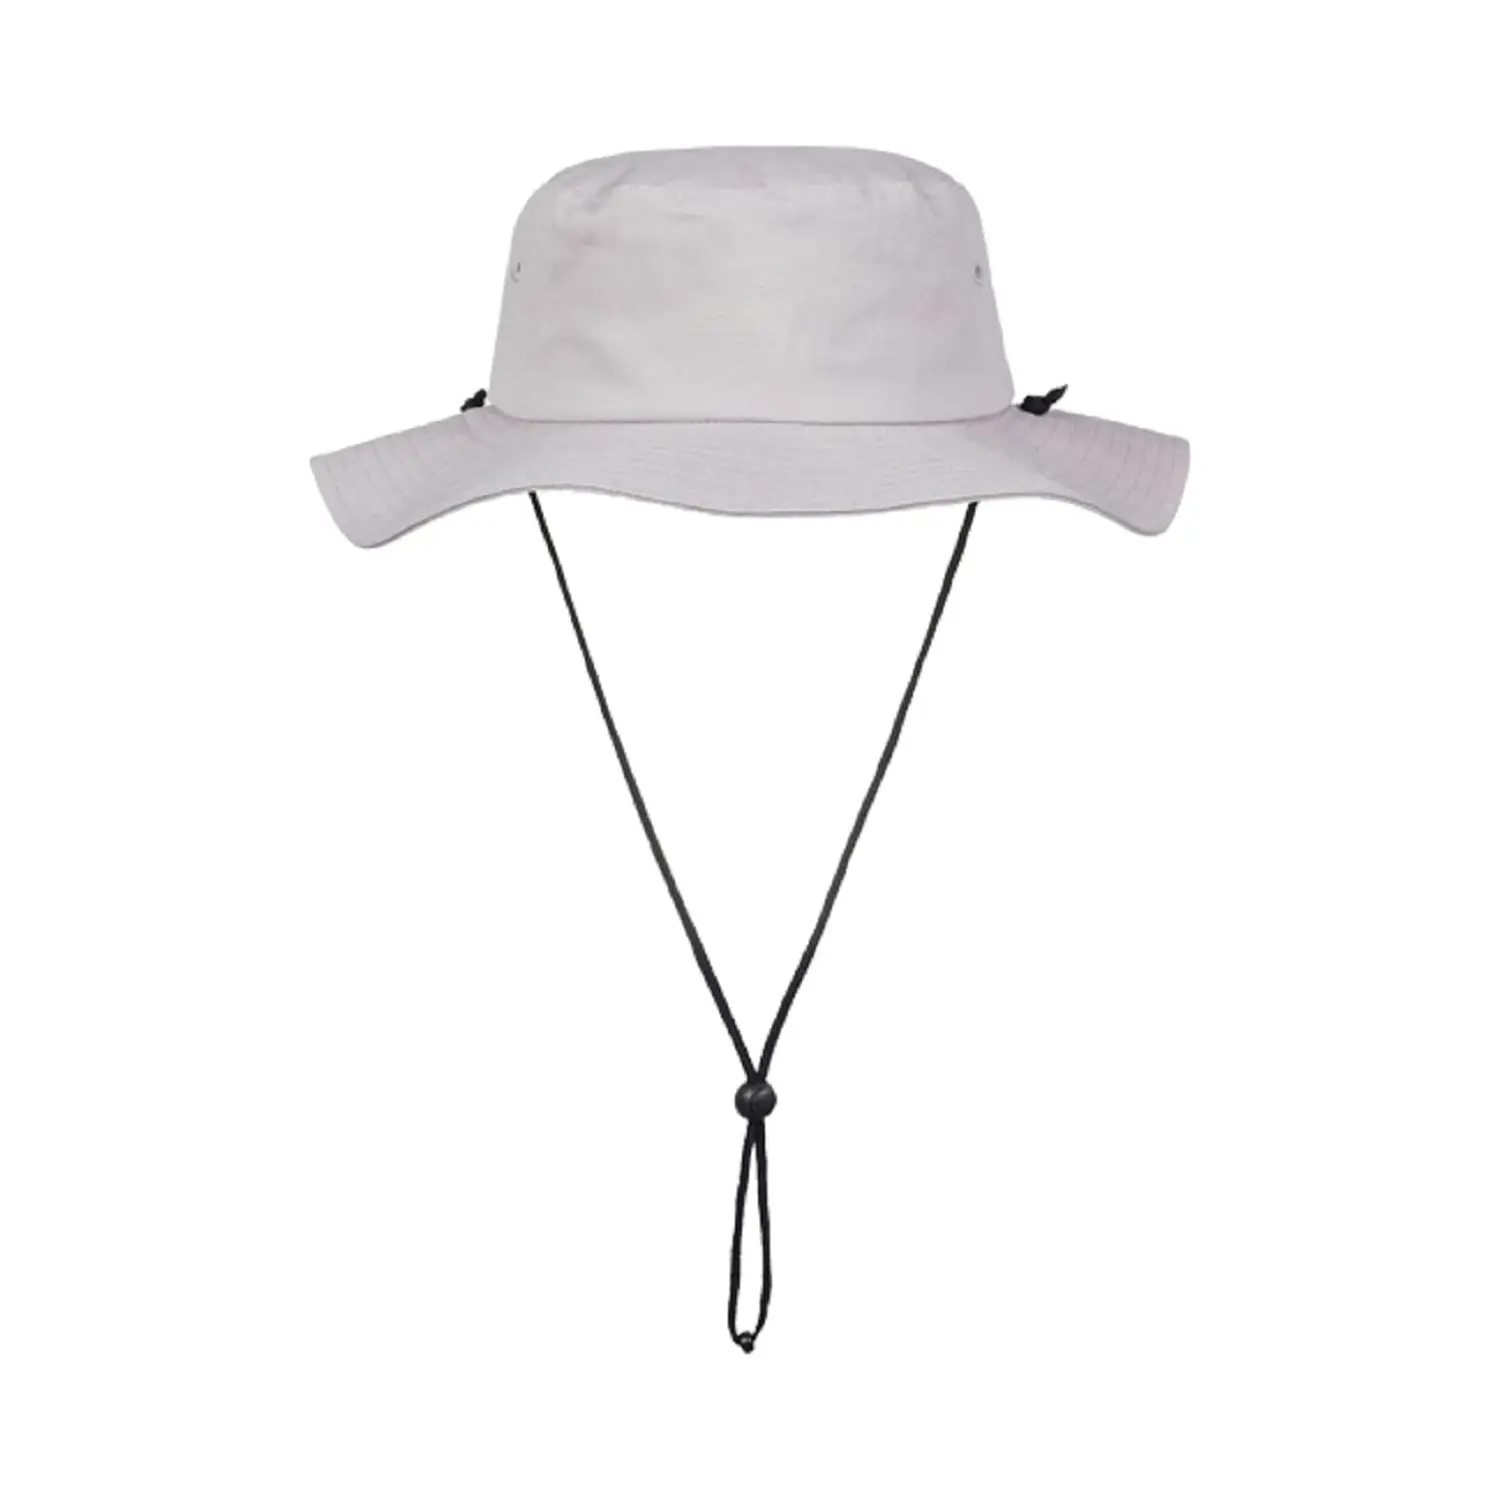 Sombrero liso grande de calidad plegable barato, sombreros de cubo personalizados de algodón con cuerda